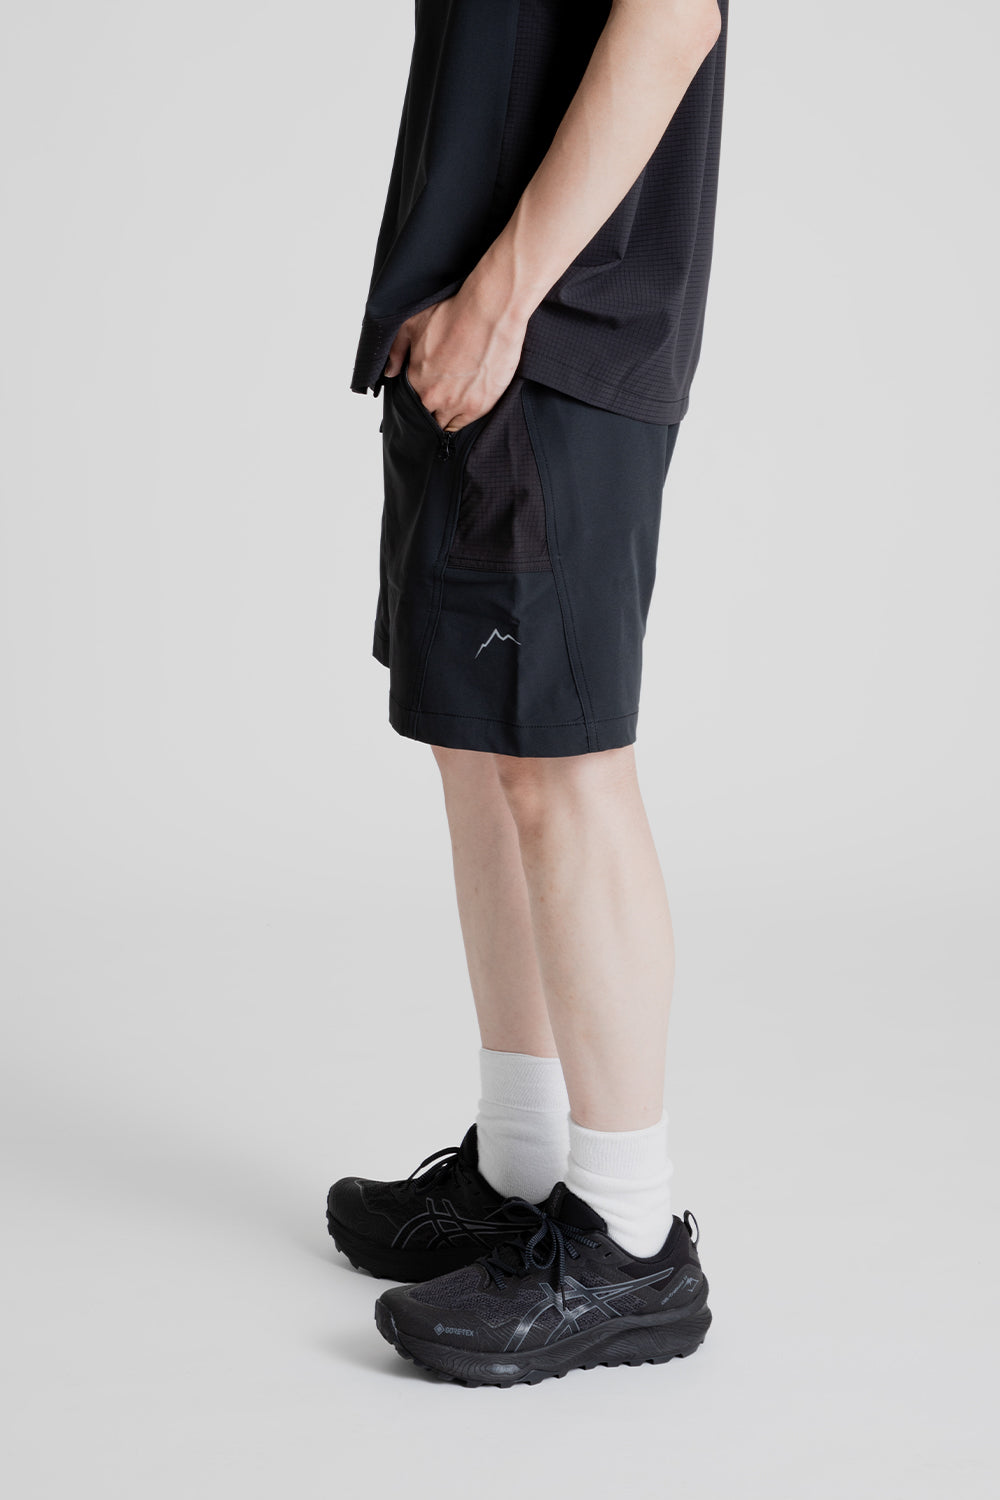 EQ Hybrid Shorts - Black